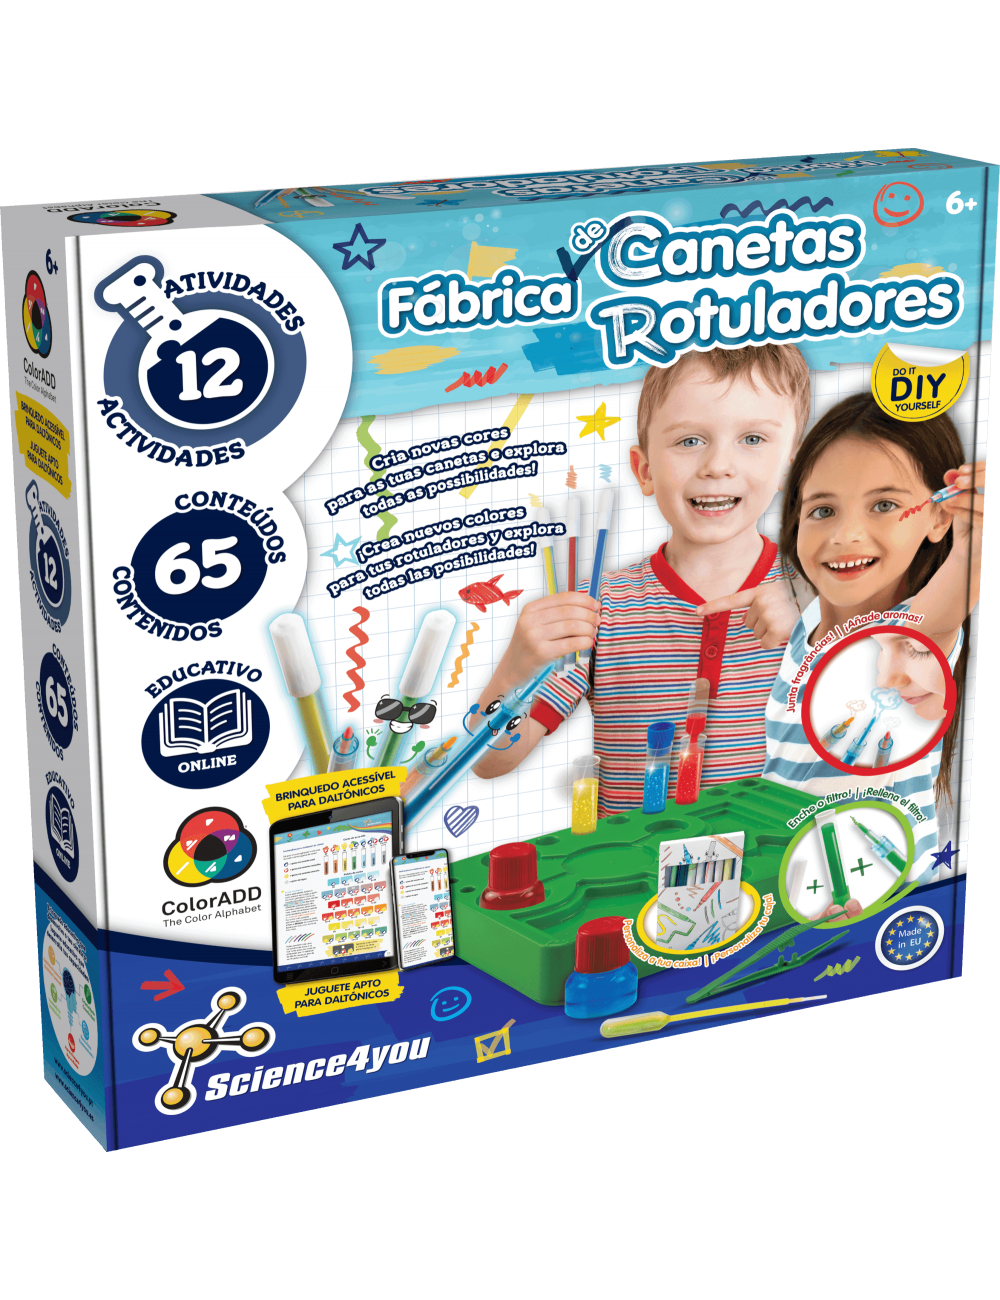 Brinquedos educativos para crianca de 3 anos, jogo para crianças de 3 anos  